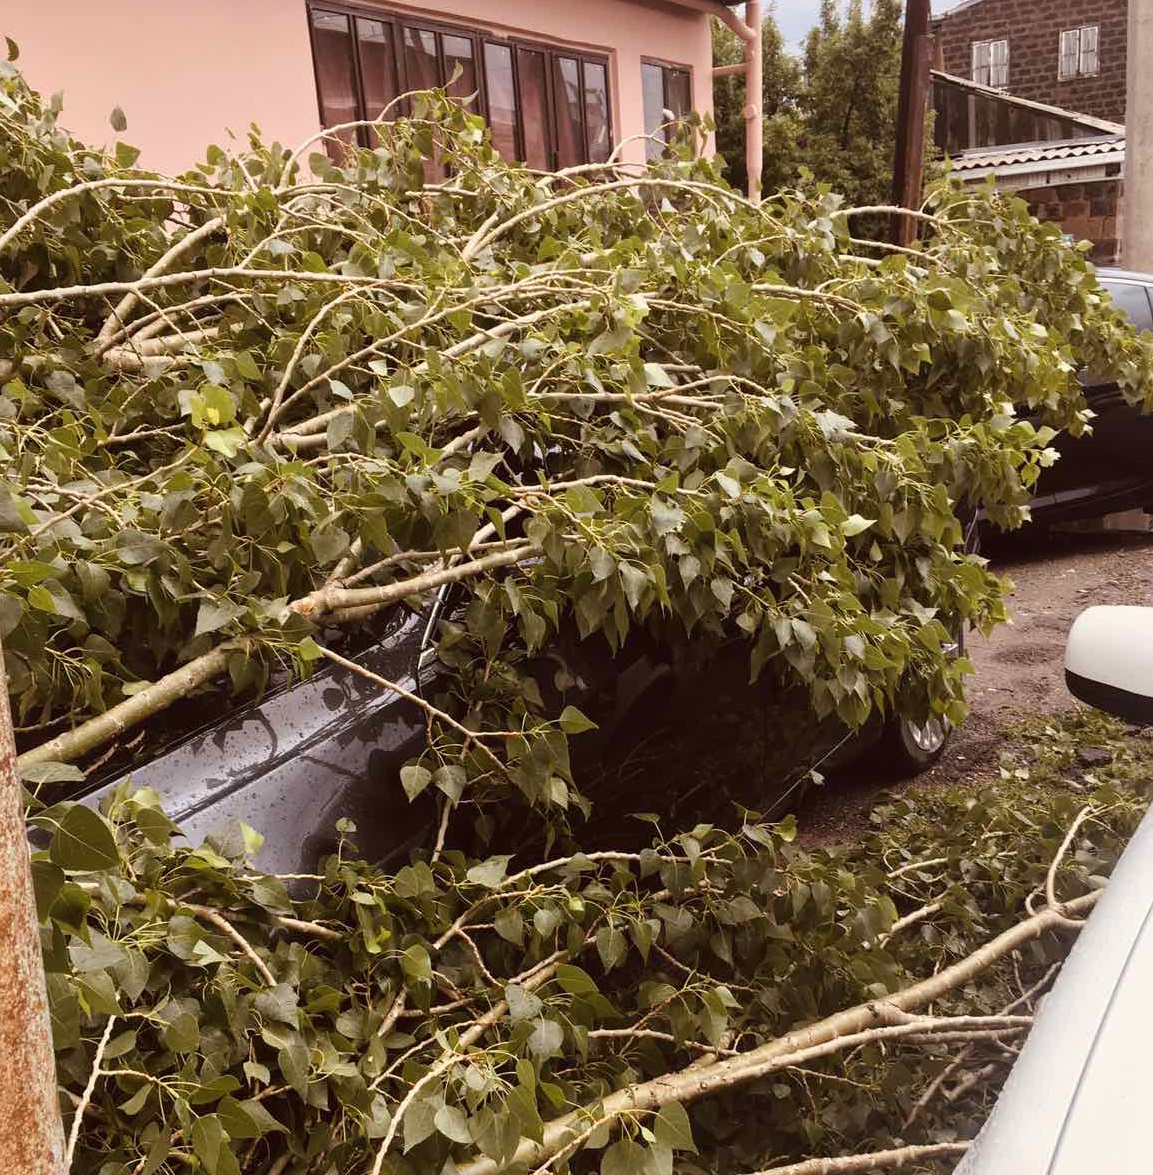 Երևանում և մարզերում  քամու հետևանքով վնասվել են շինությունների տանիքներ, ավտոմեքենաներ և կոտրվել են ծառեր